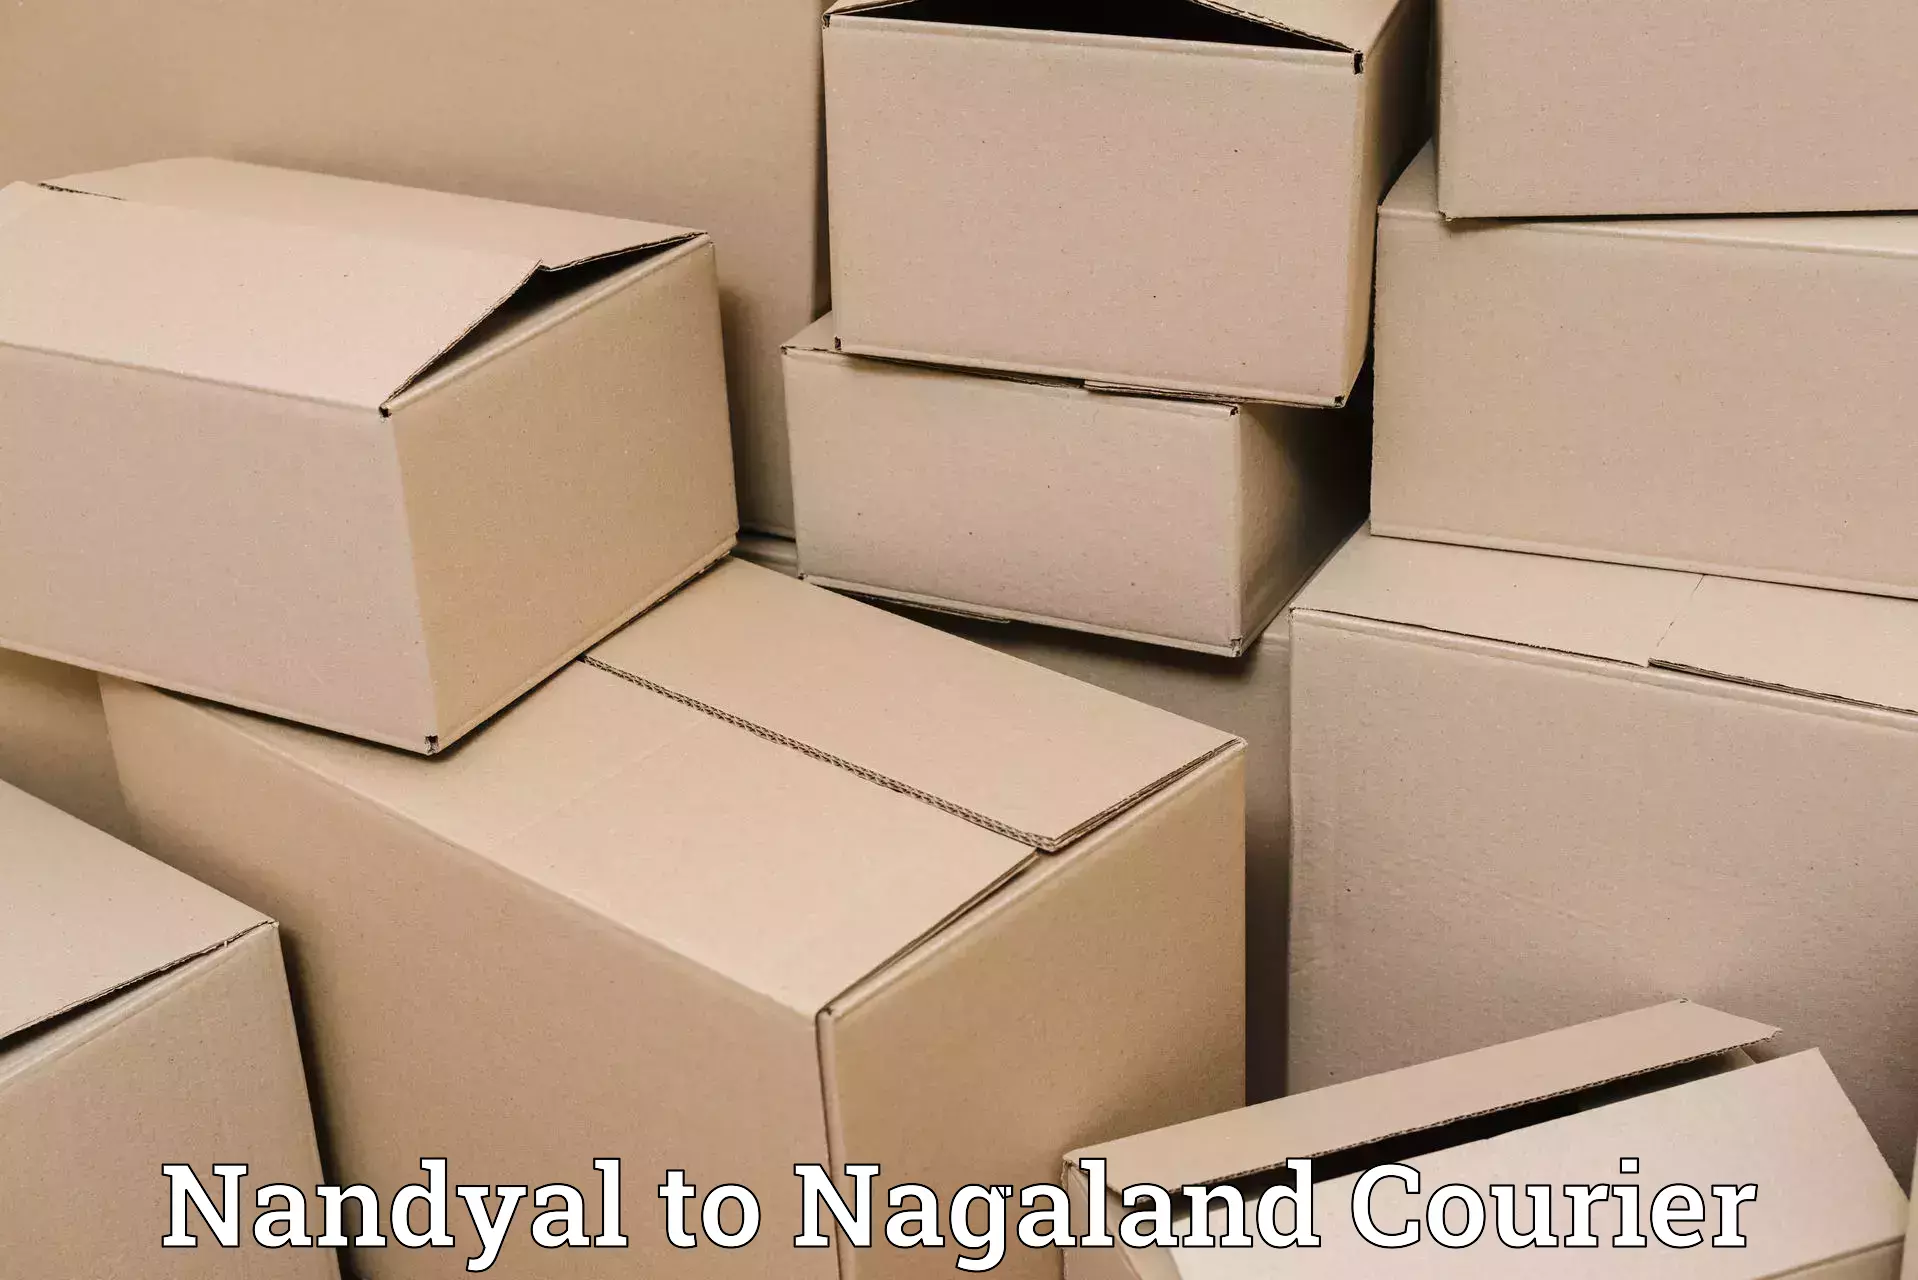 Delivery service partnership Nandyal to Phek